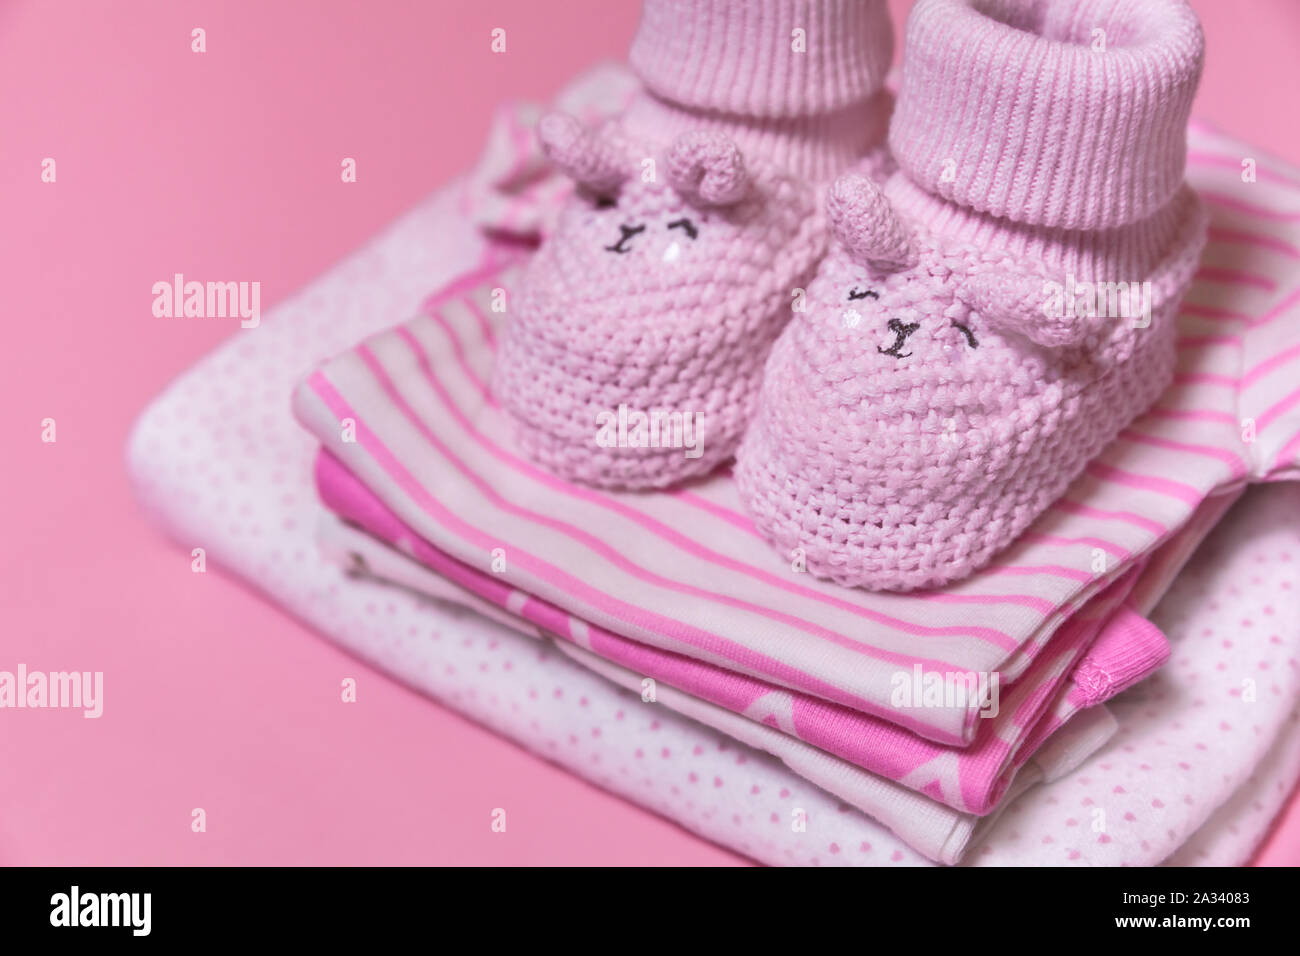 Ropa de bebé y ganchillo zapatos para una niña recién nacida sobre un fondo  de color rosa, el embarazo concepto - Imagen Fotografía de stock - Alamy